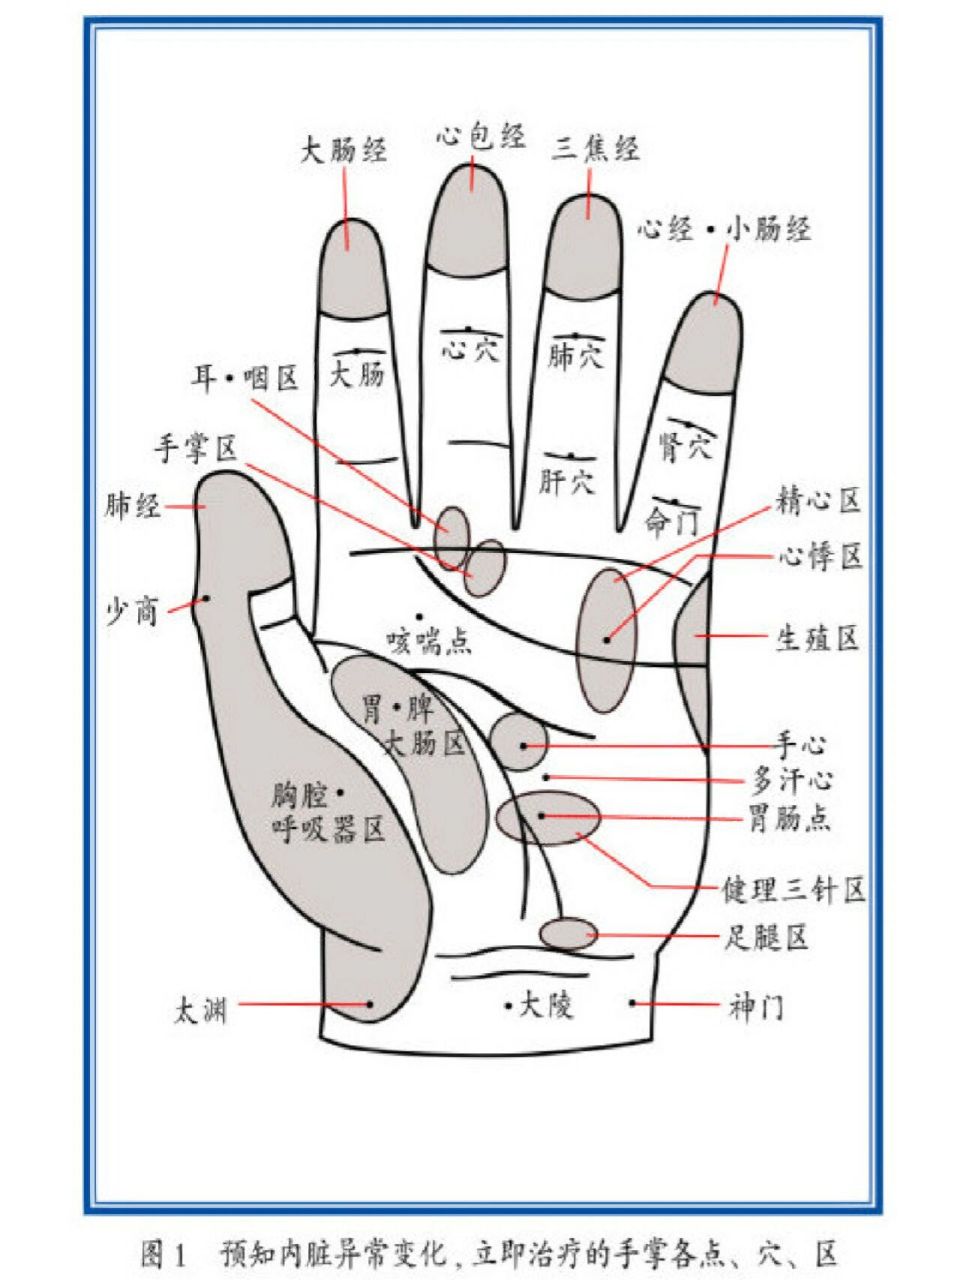 左手掌对应器官图图片